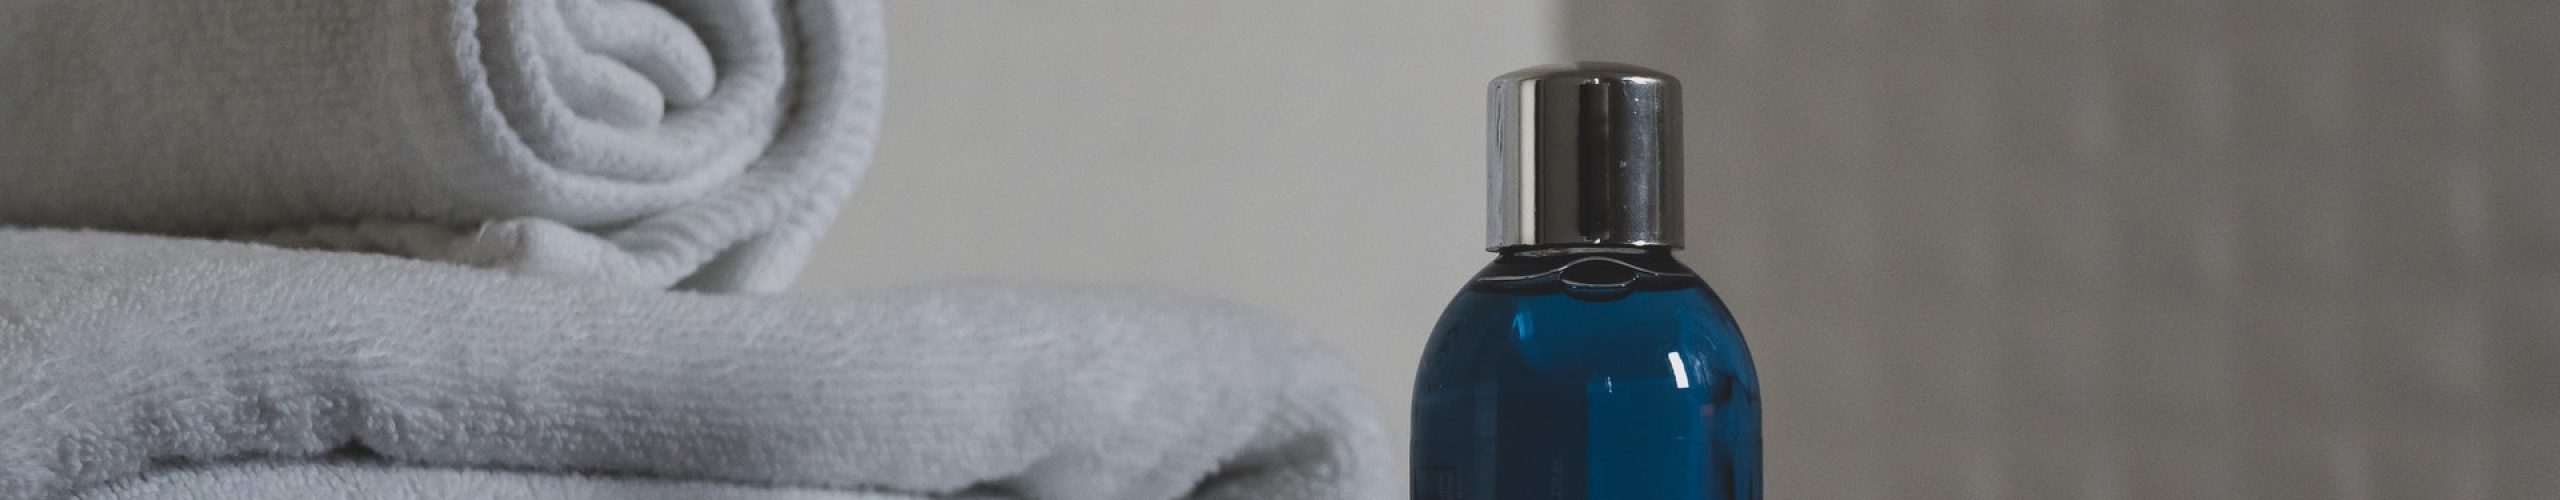 blue-glass-bottle-beside-white-towel-3872899